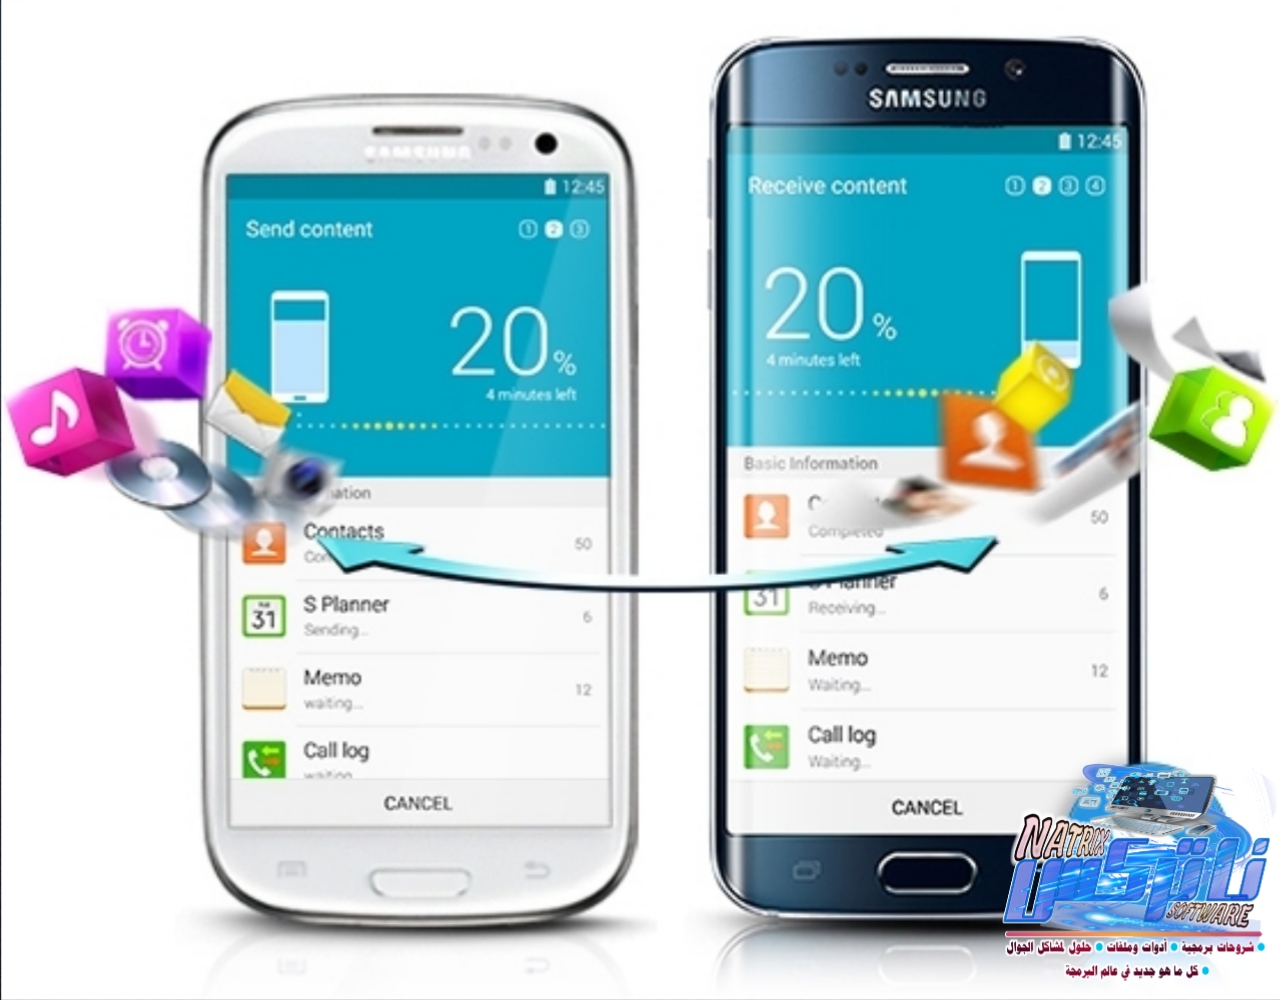 Www Samsung Com Smartview